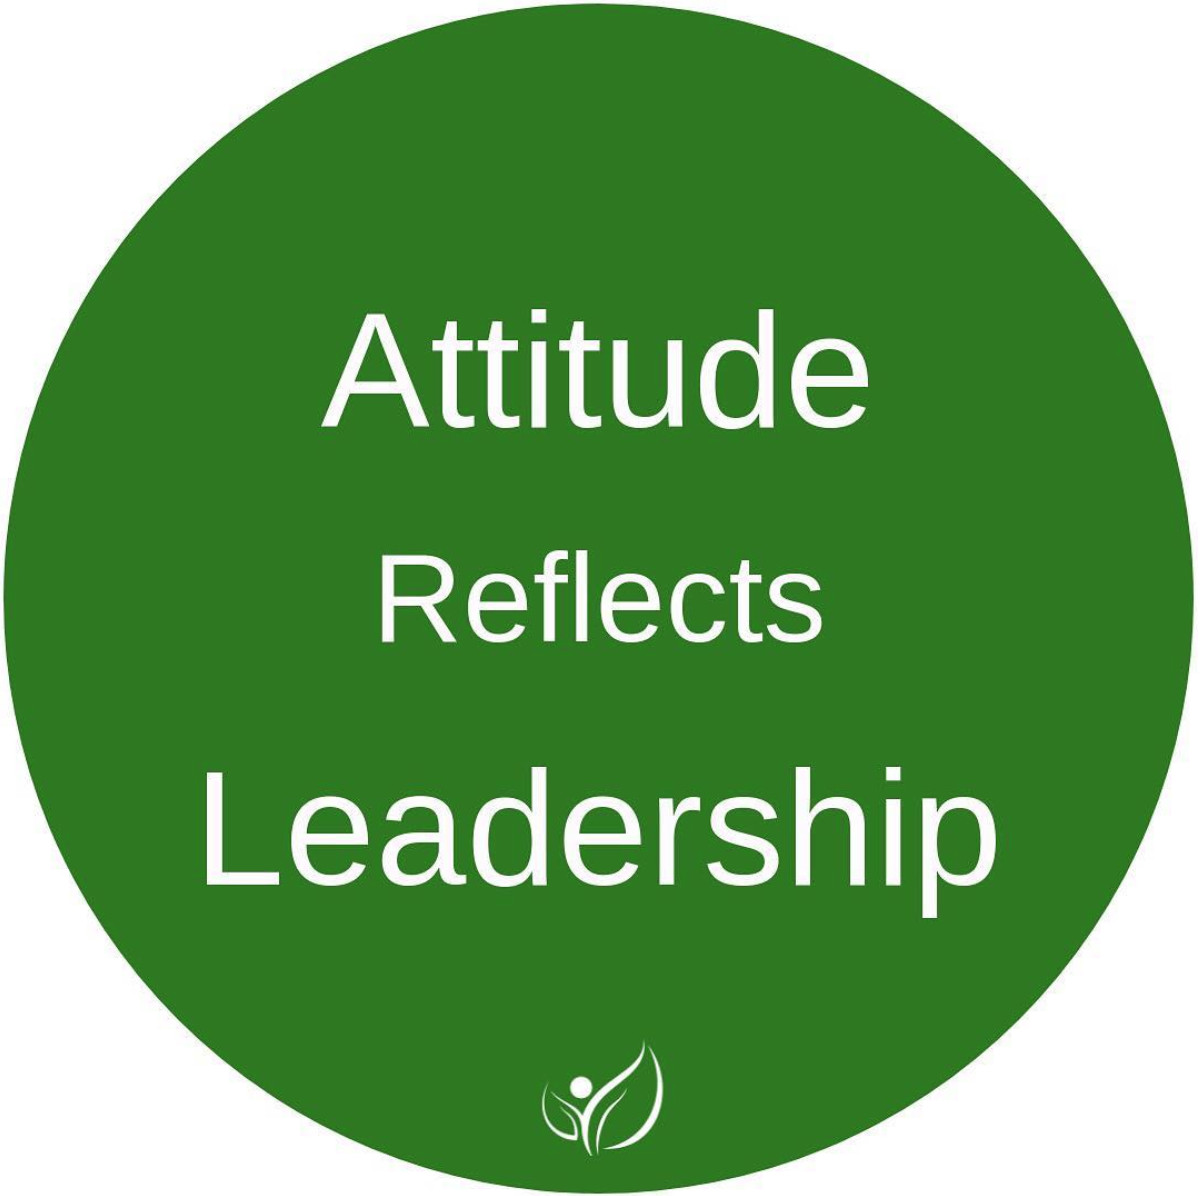 Attitude Reflects Leadership Quote
 Attitude reflects leadership is a quote I heard in the